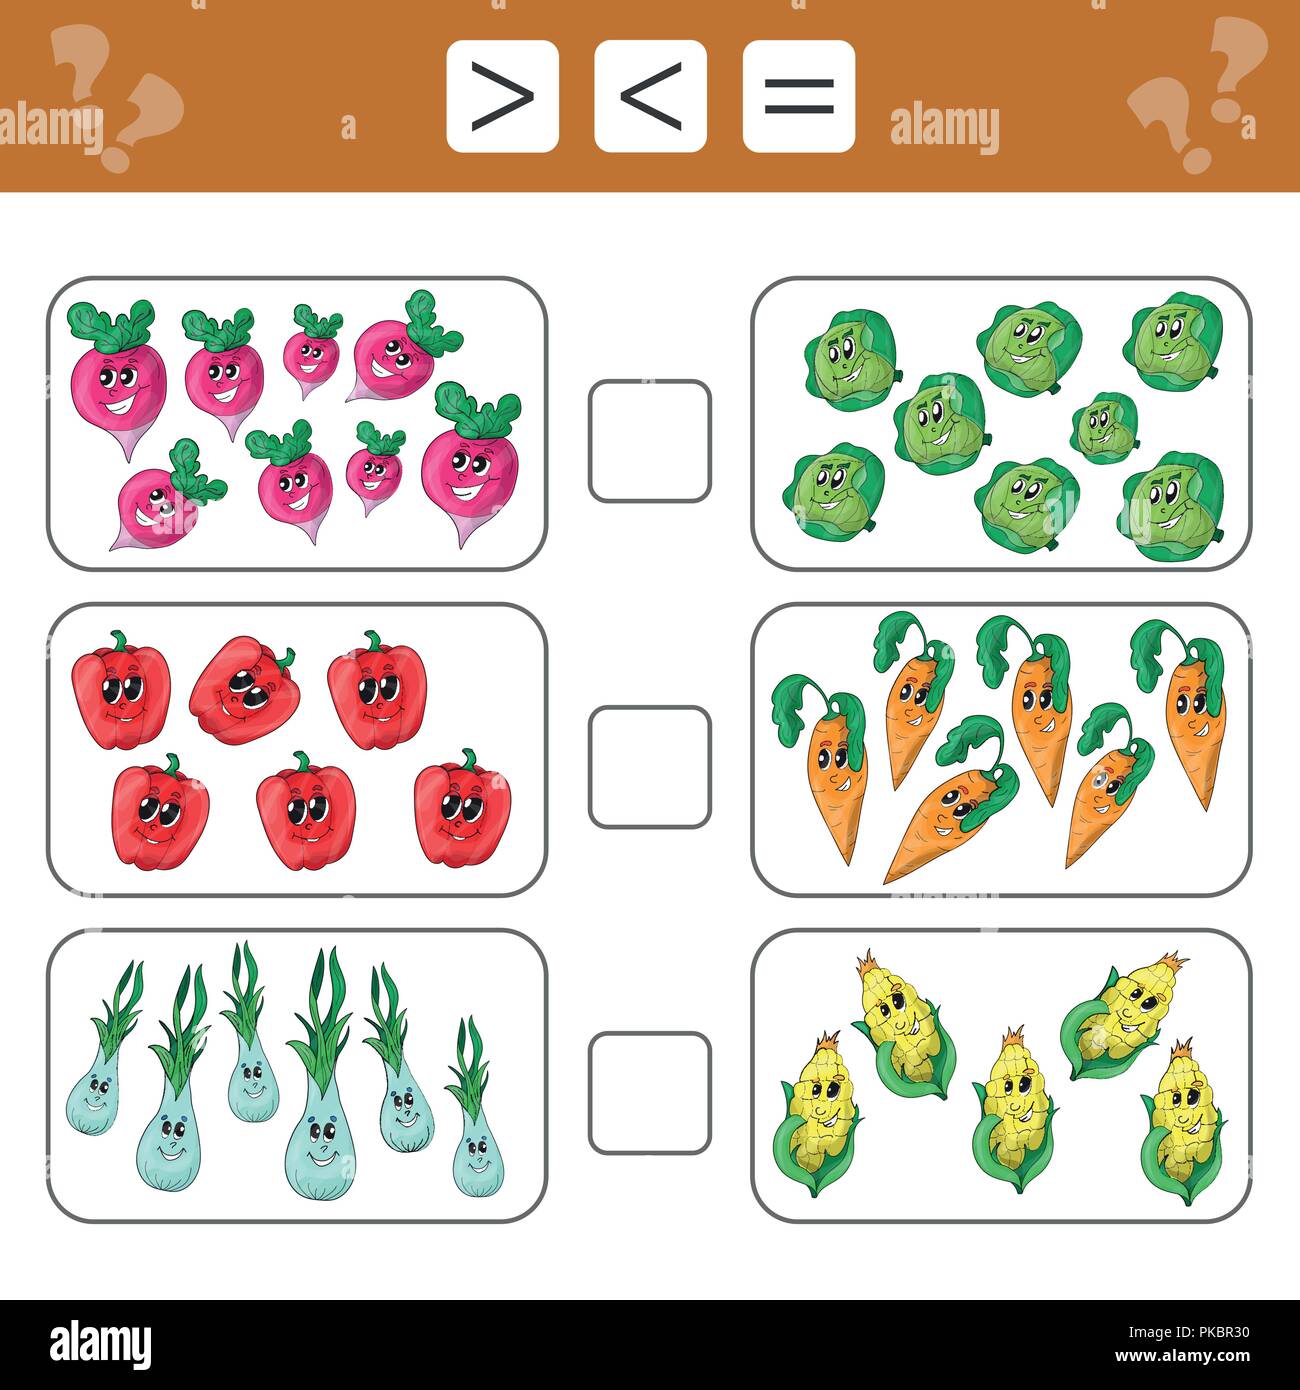 Lernen Mathematik, Zahlen - mehr, weniger oder gleich. Aufgaben für Kinder  Stock-Vektorgrafik - Alamy